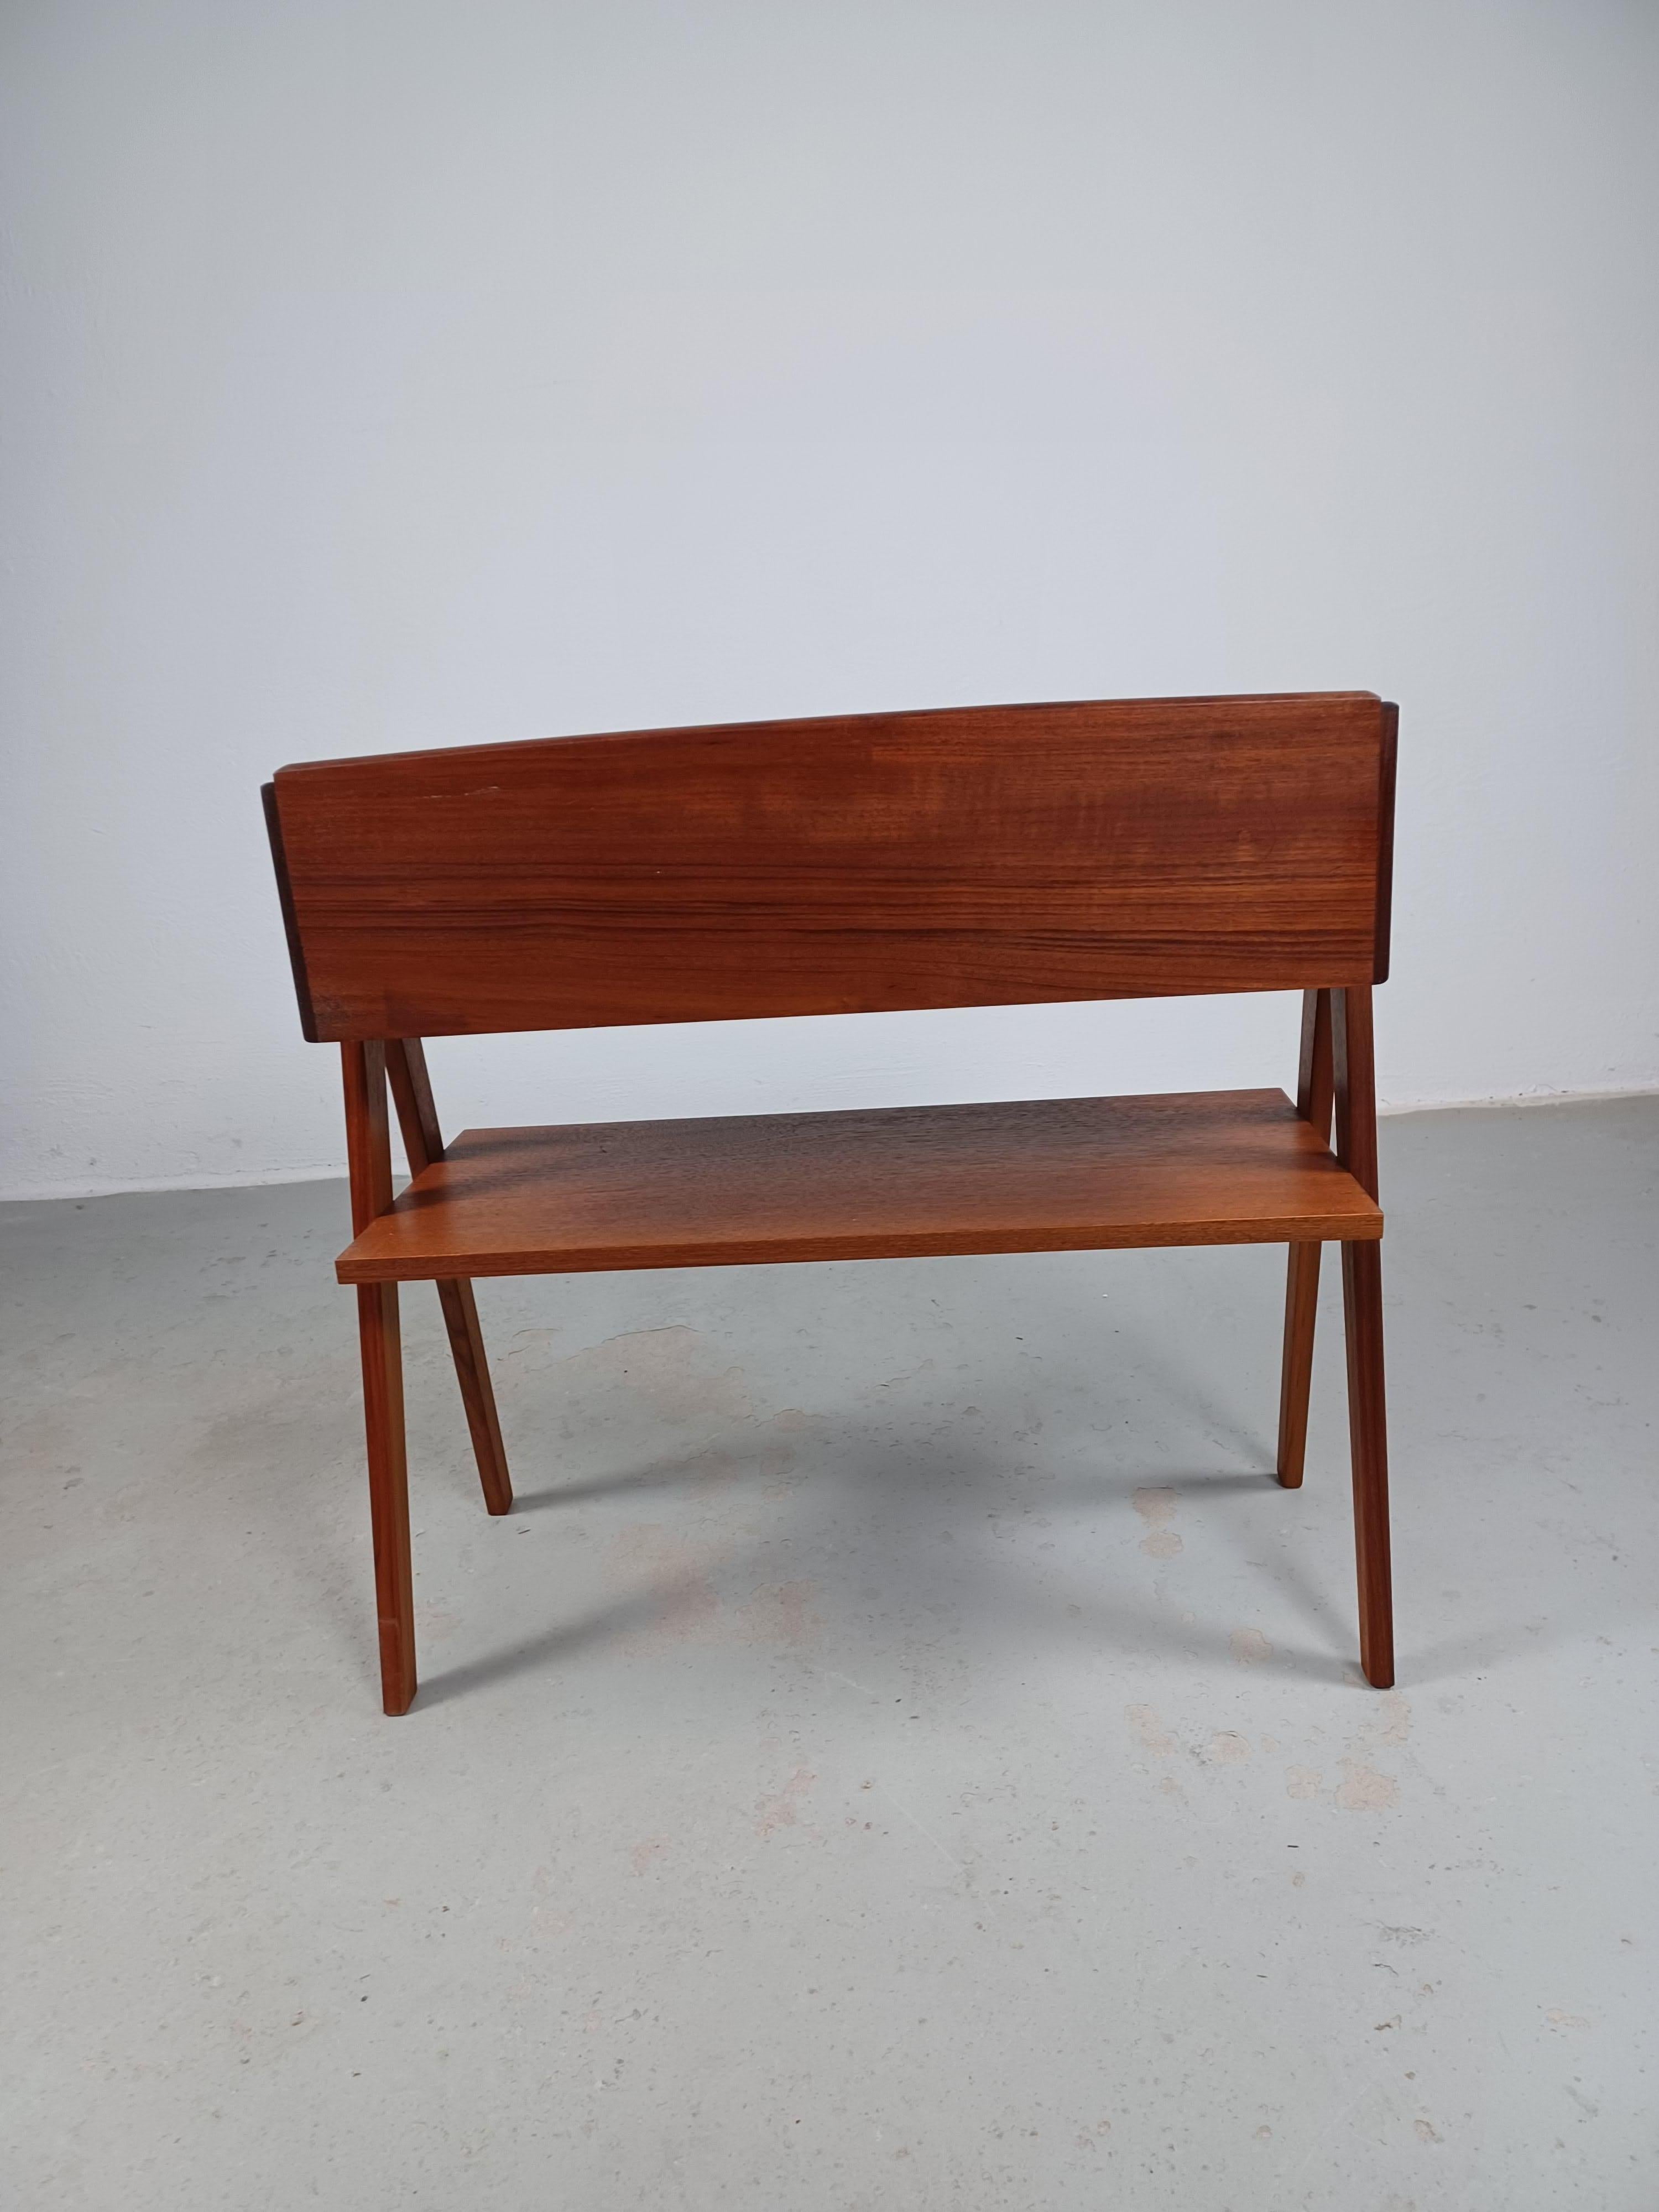 1950s Fully Restored Danish Søren Rasmussen Entry Table in Teak For Sale 4